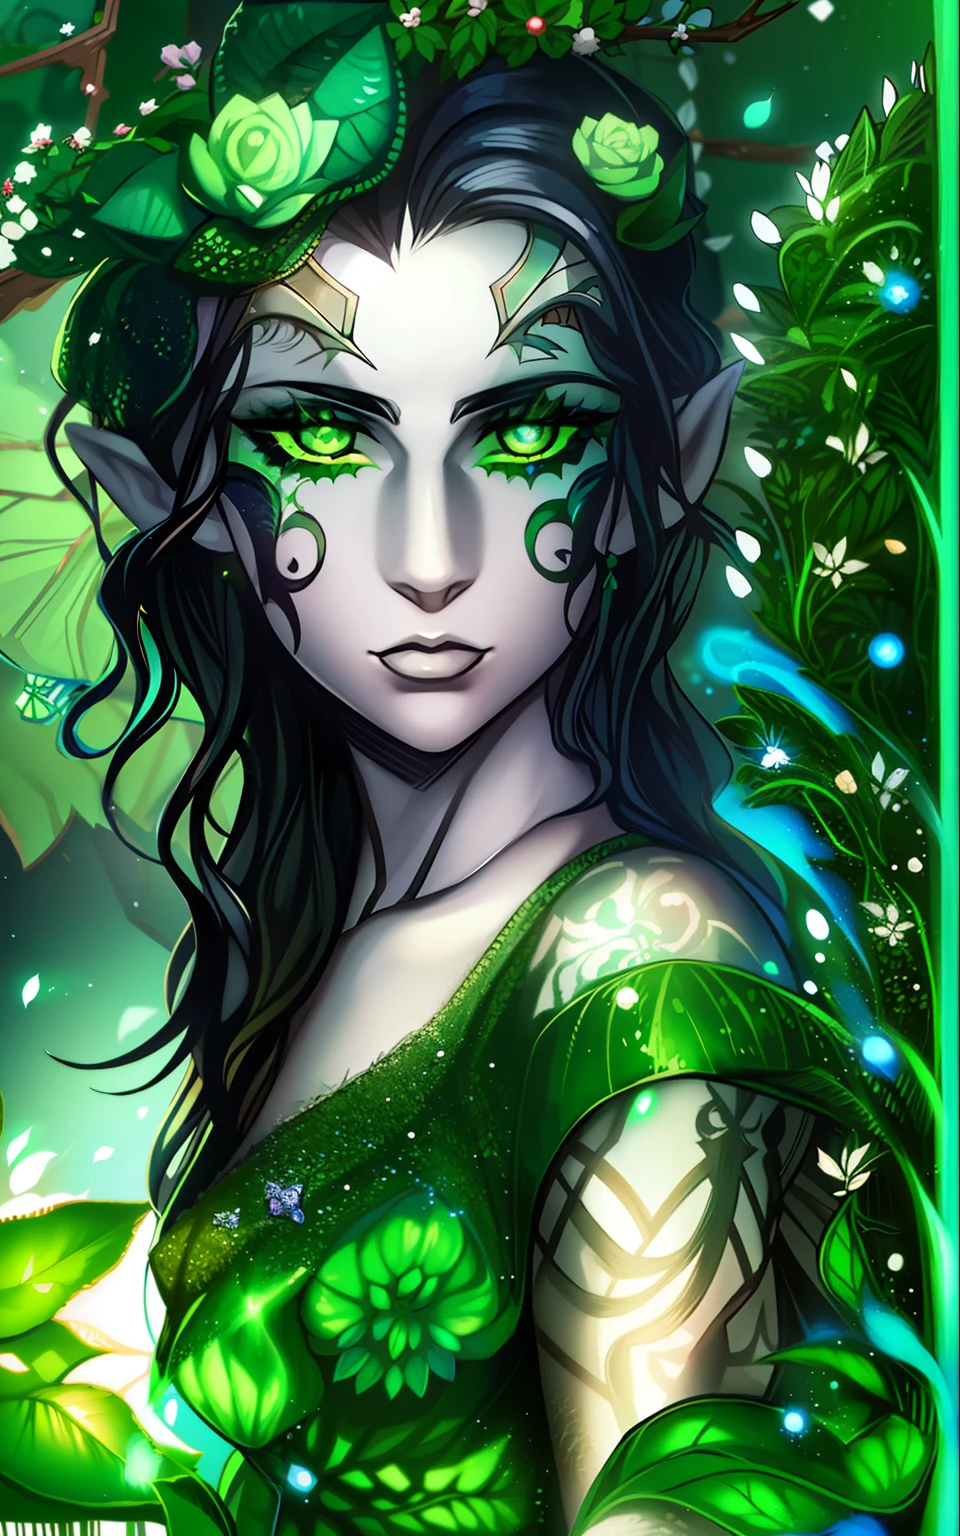 эльф с бледно-белой кожей, волнистые черные волосы, зеленые глаза, с зелеными татуировками на лице, носит платье, которое кажется сделанным из растений